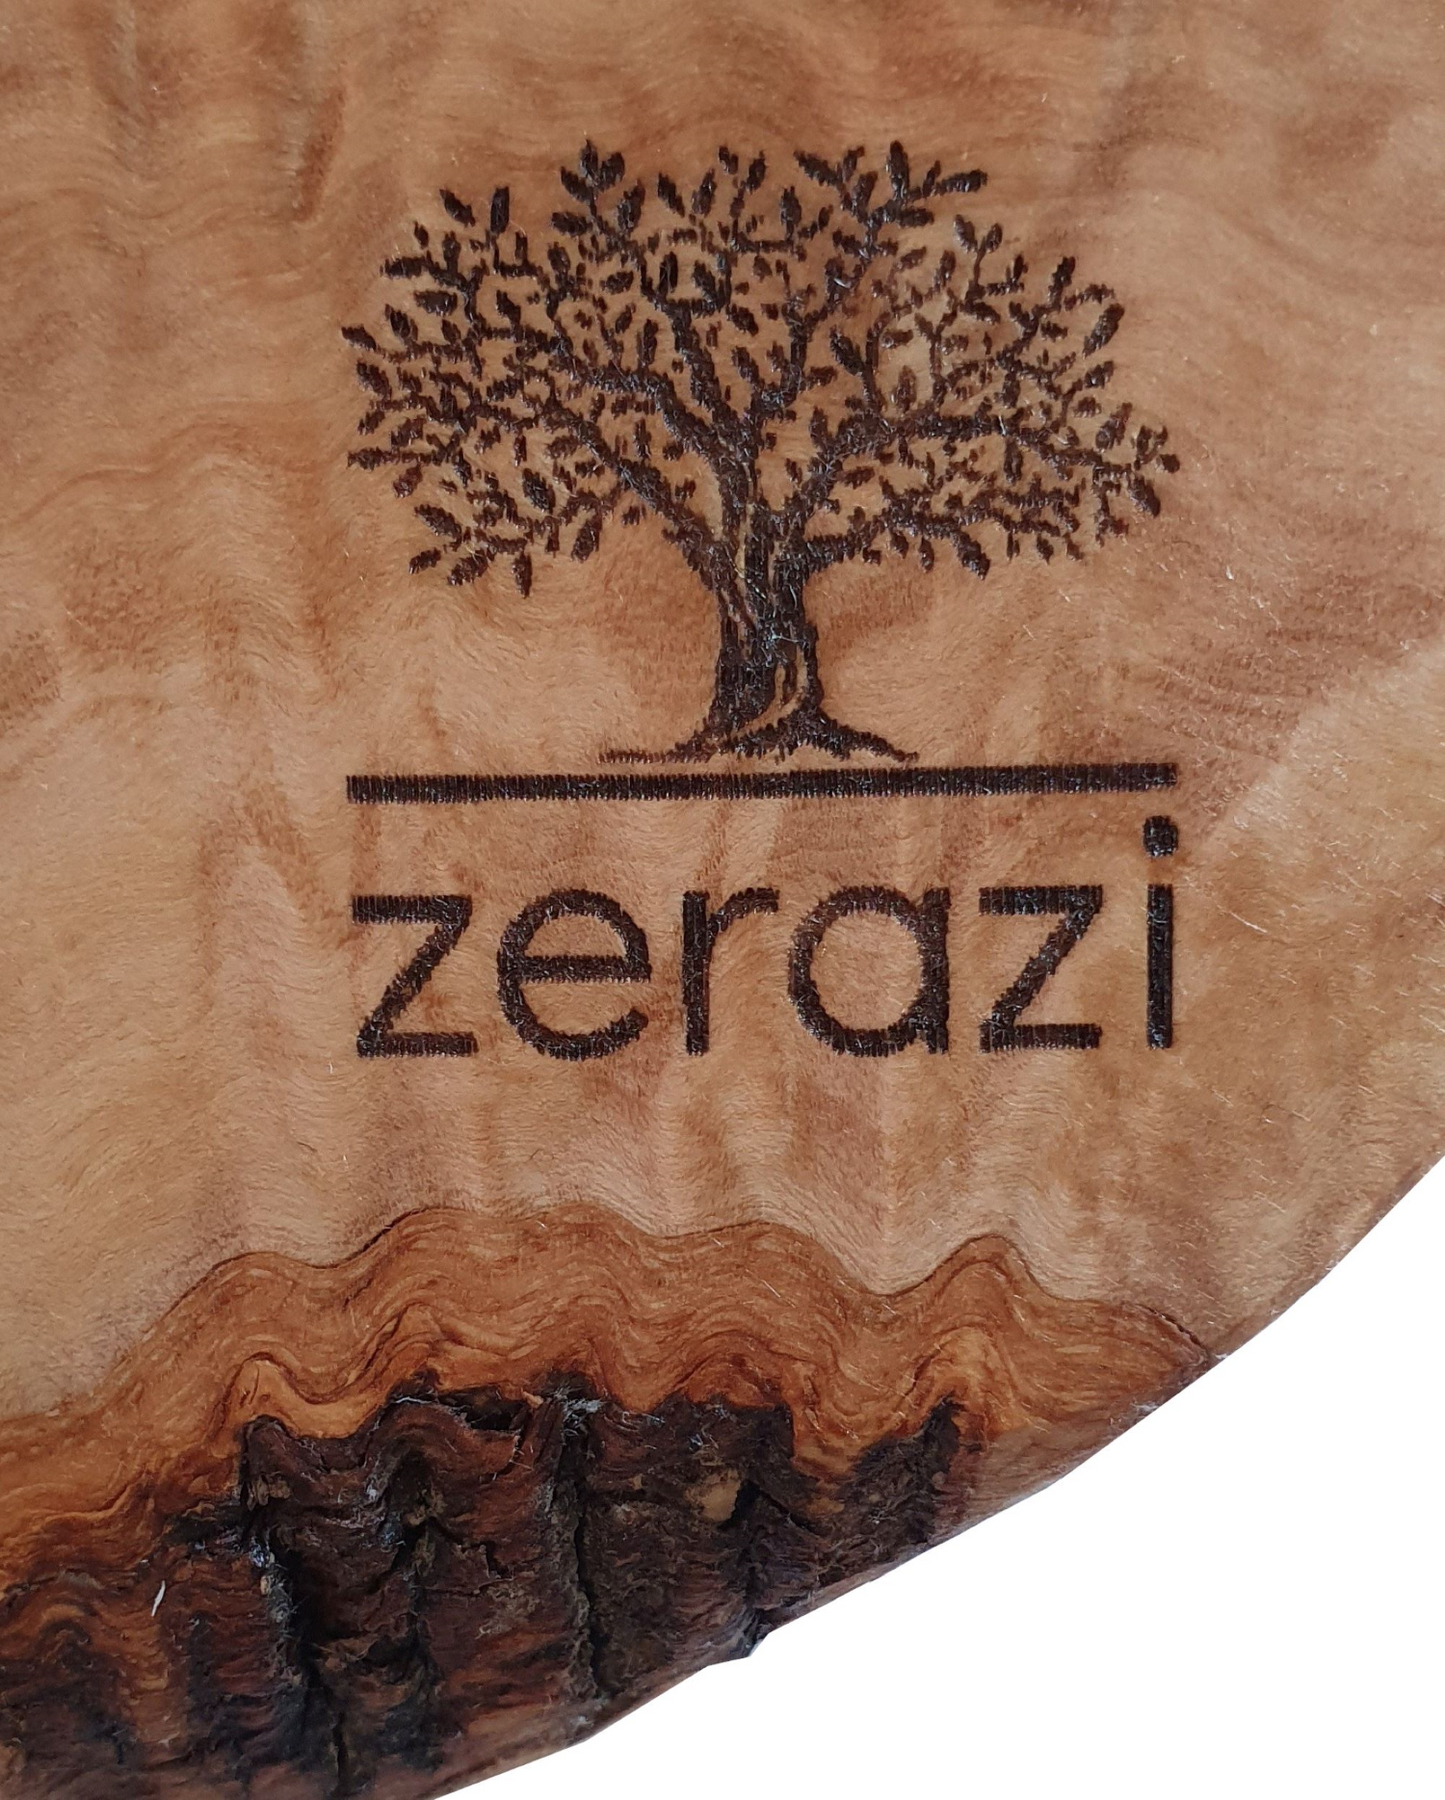 Zerazi | Set de dos tablas de cortar de madera de olivo para tapas y aperitivos | Ecológico | Completamente hecho a mano | Duradero | Higiénico